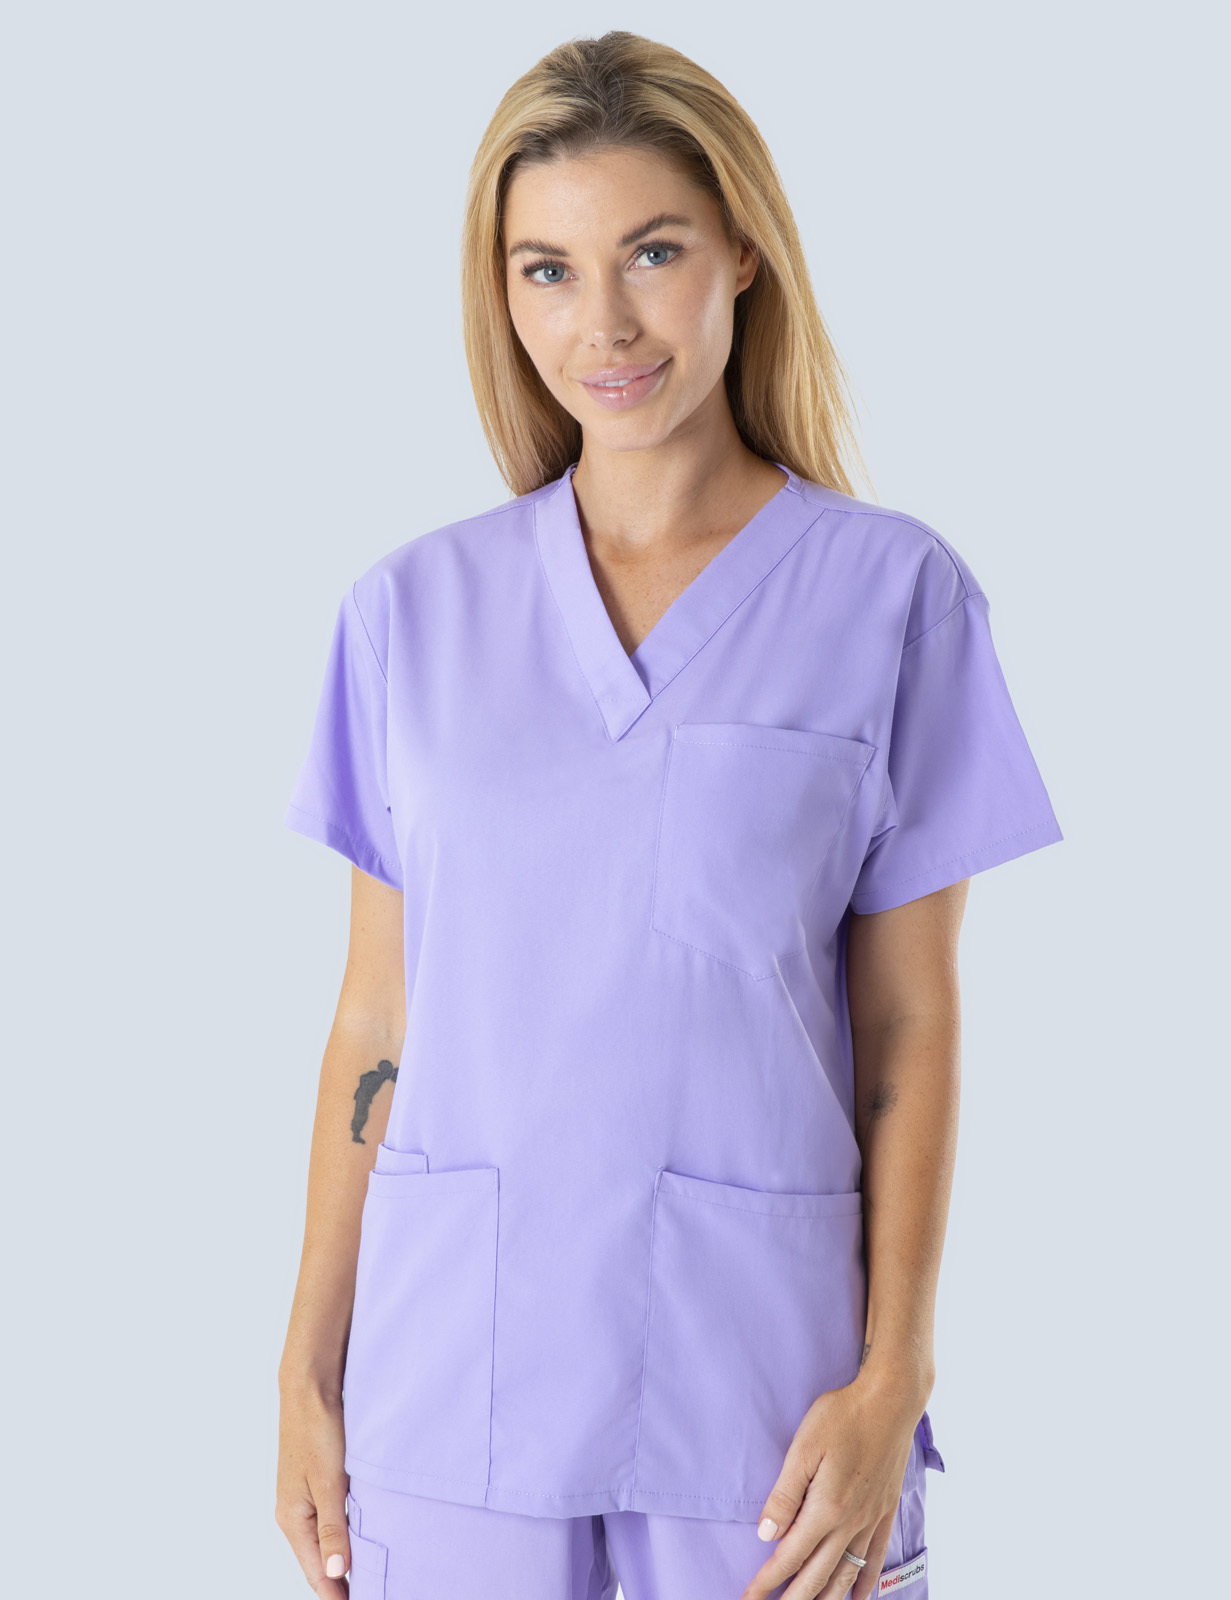 Queensland Children's Hospital Emergency Department Senior Medical Officer Uniform Top Bundle  (4 Pocket Top in Lilac  incl Logos)